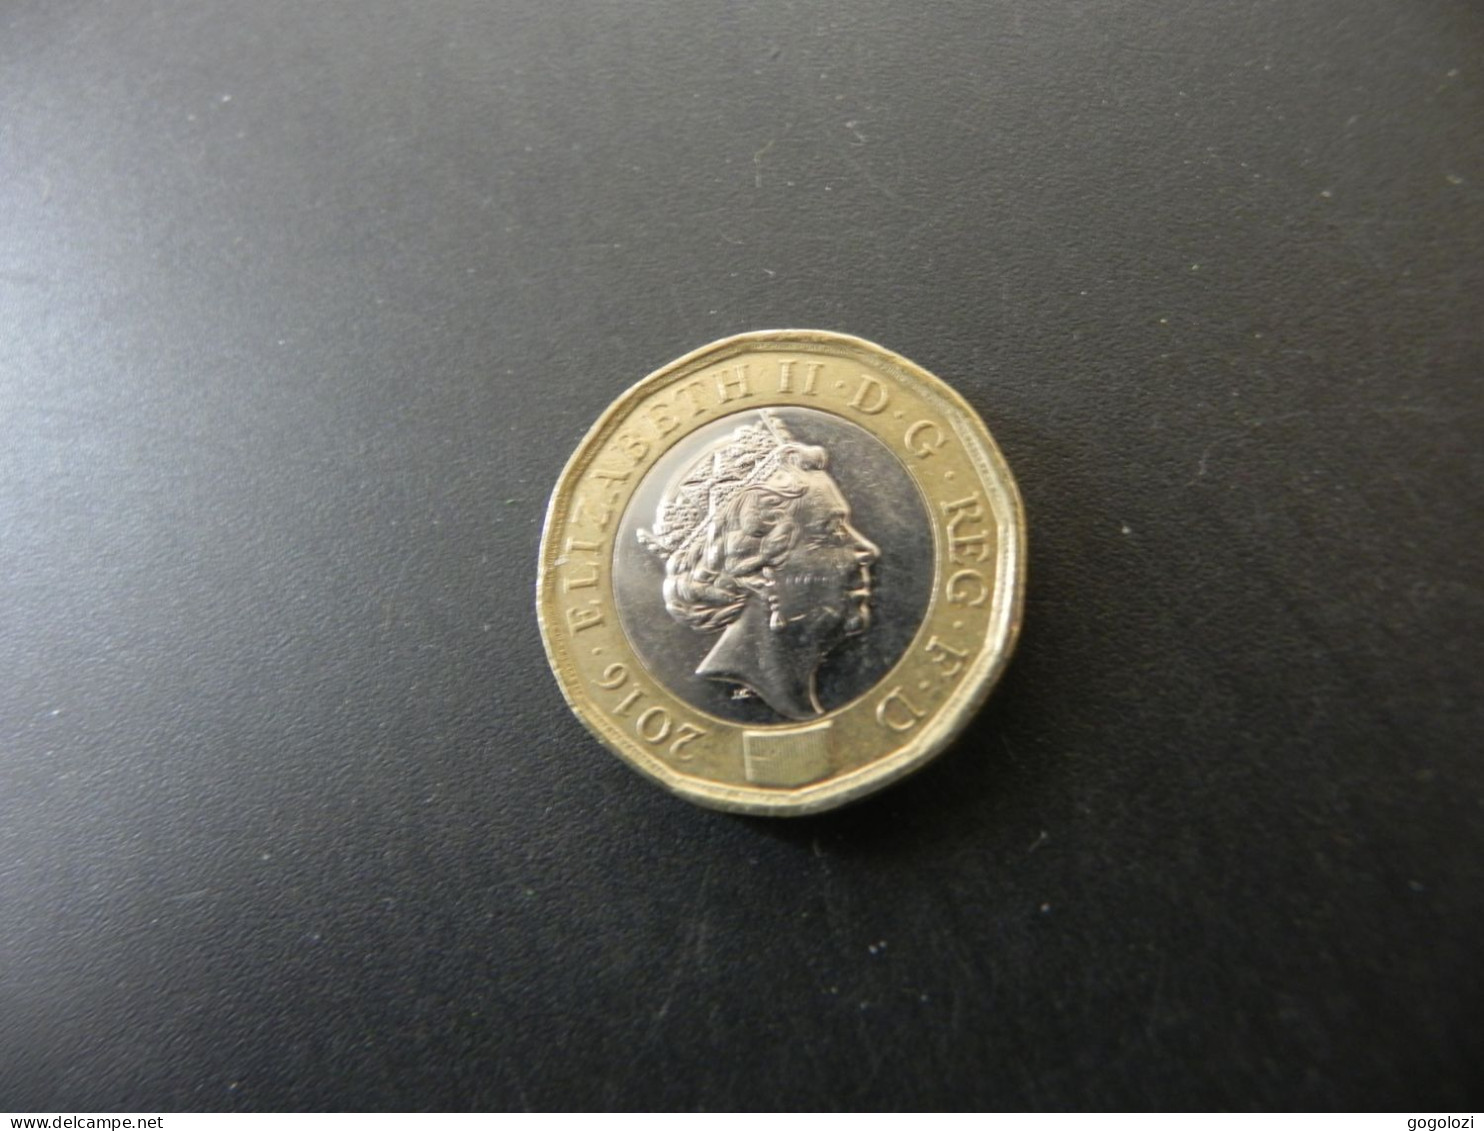 Great Britain 1 Pound 2016 - 1 Pound